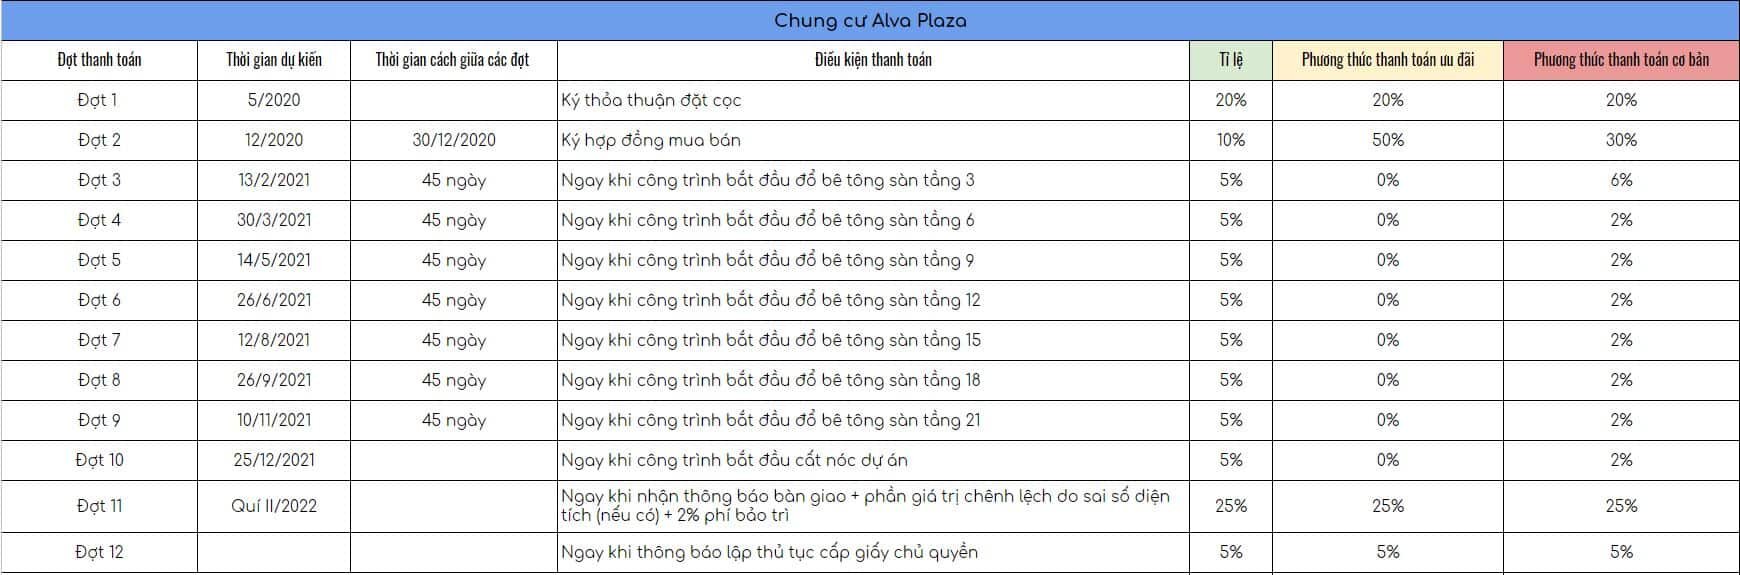 Phương thức thanh toán căn hộ Alva Plaza Thuận An